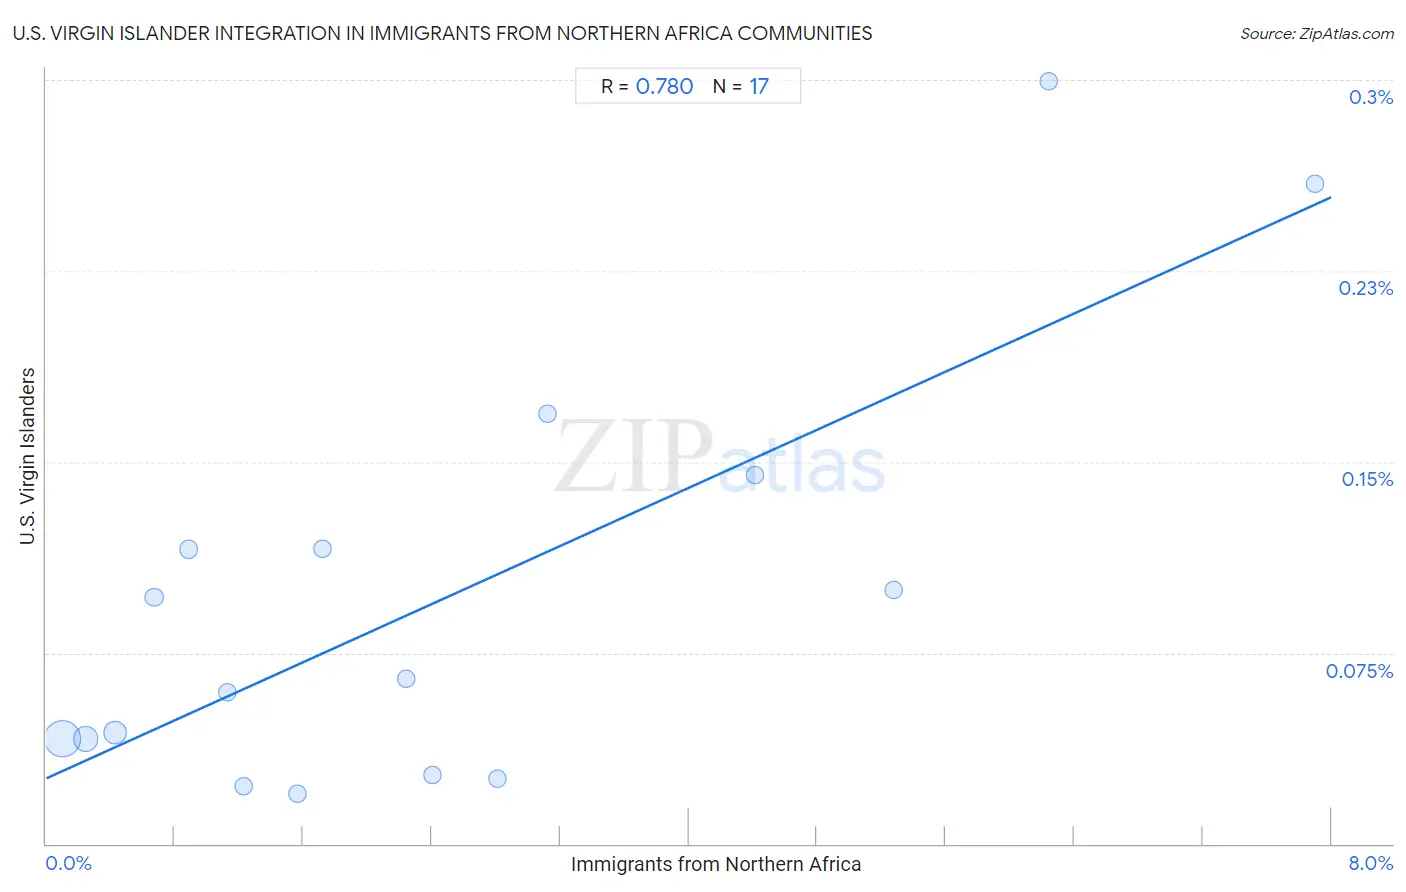 Immigrants from Northern Africa Integration in U.S. Virgin Islander Communities